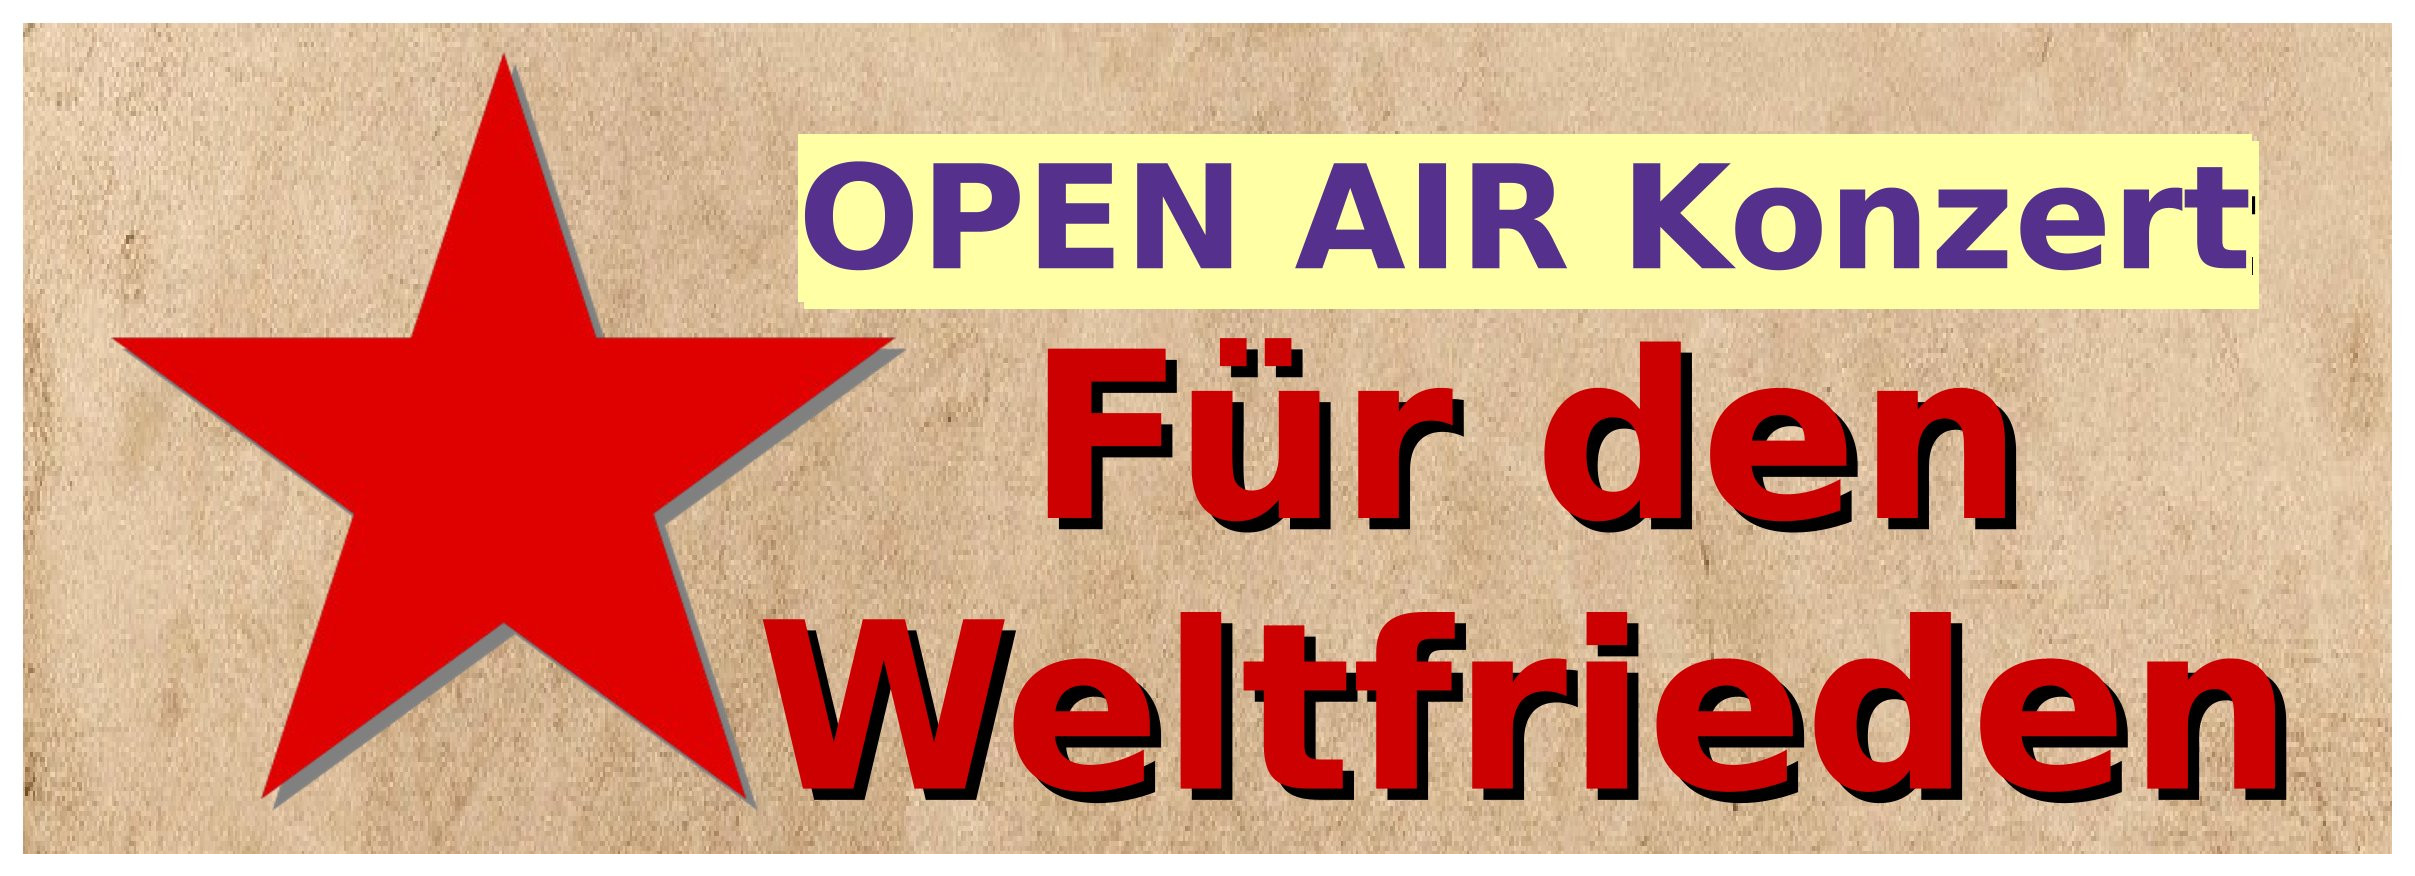 Bremen: Open Air Konzert für den Weltfrieden